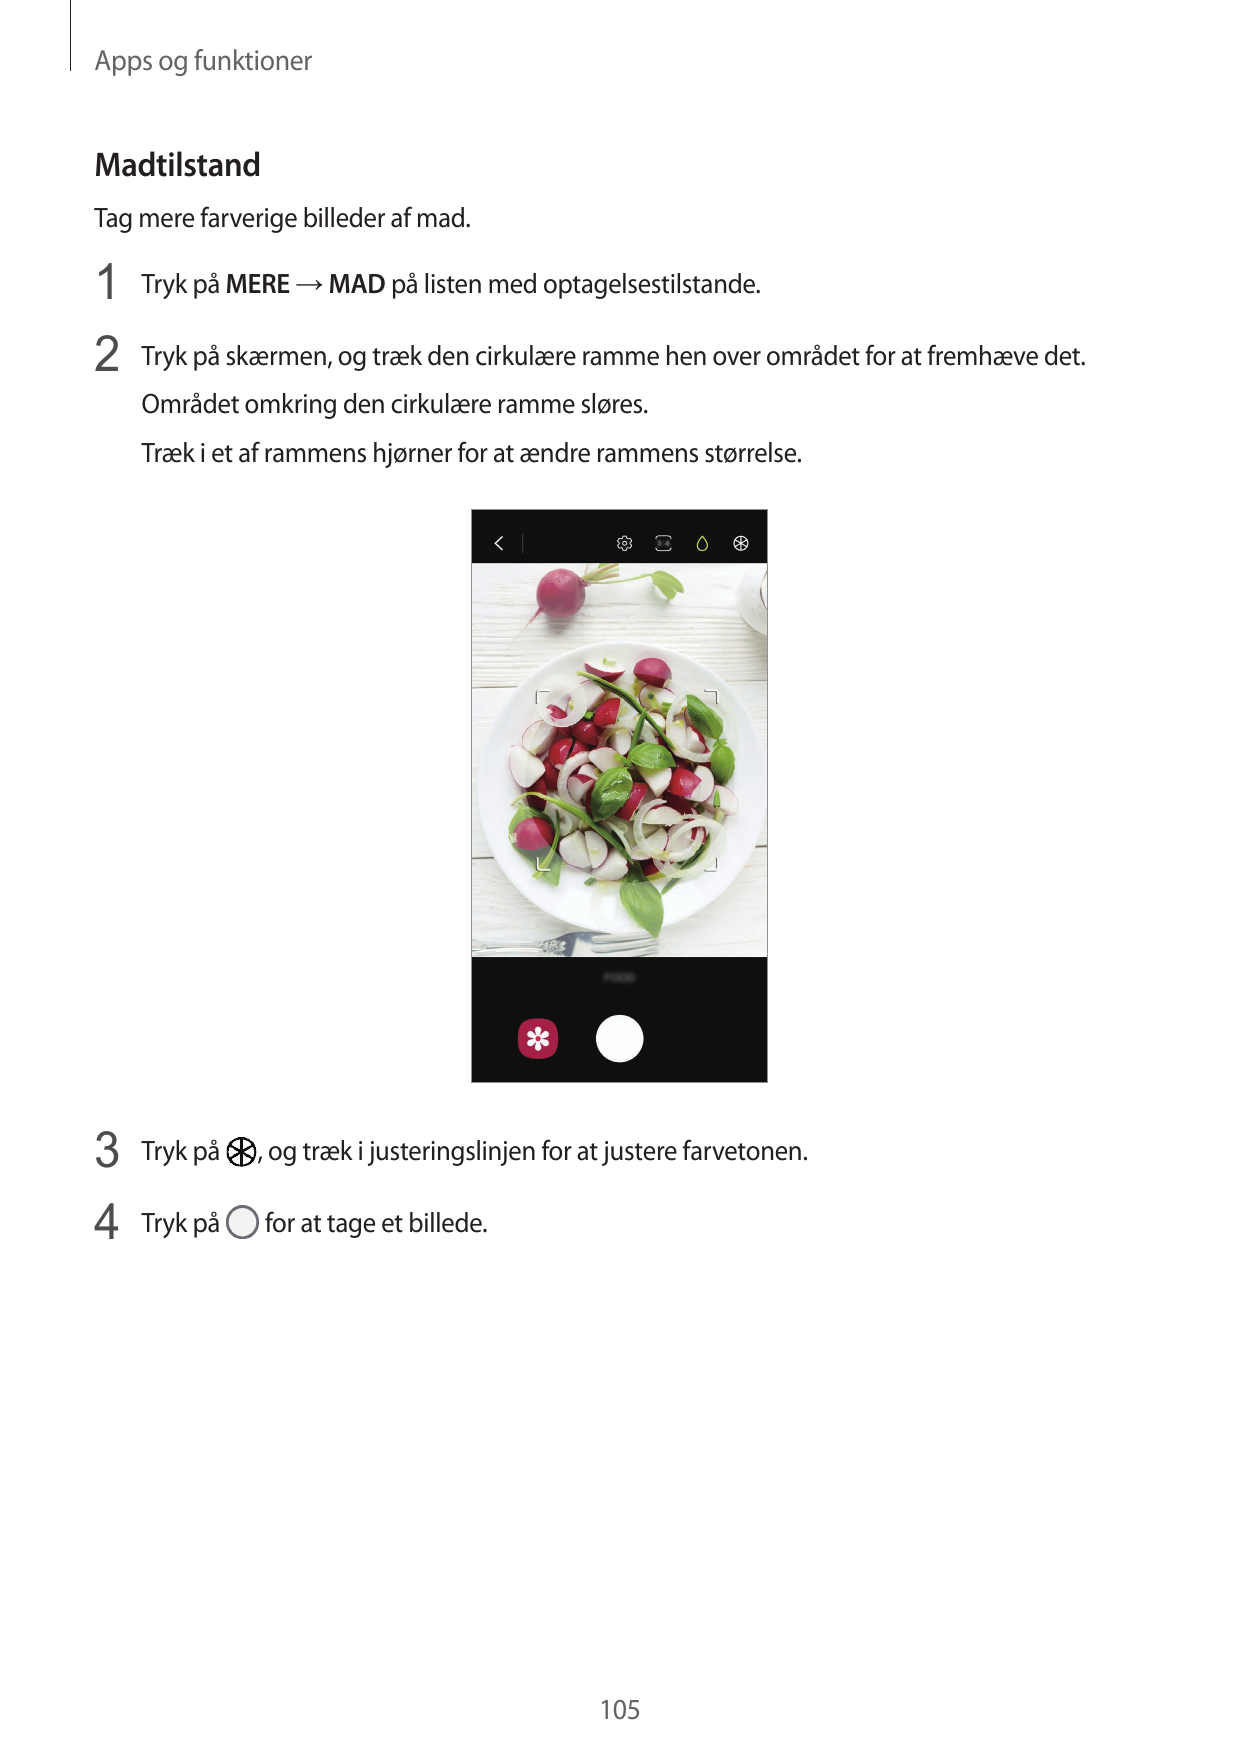 Apps og funktionerMadtilstandTag mere farverige billeder af mad.1 Tryk på MERE → MAD på listen med optagelsestilstande.2 Tryk på